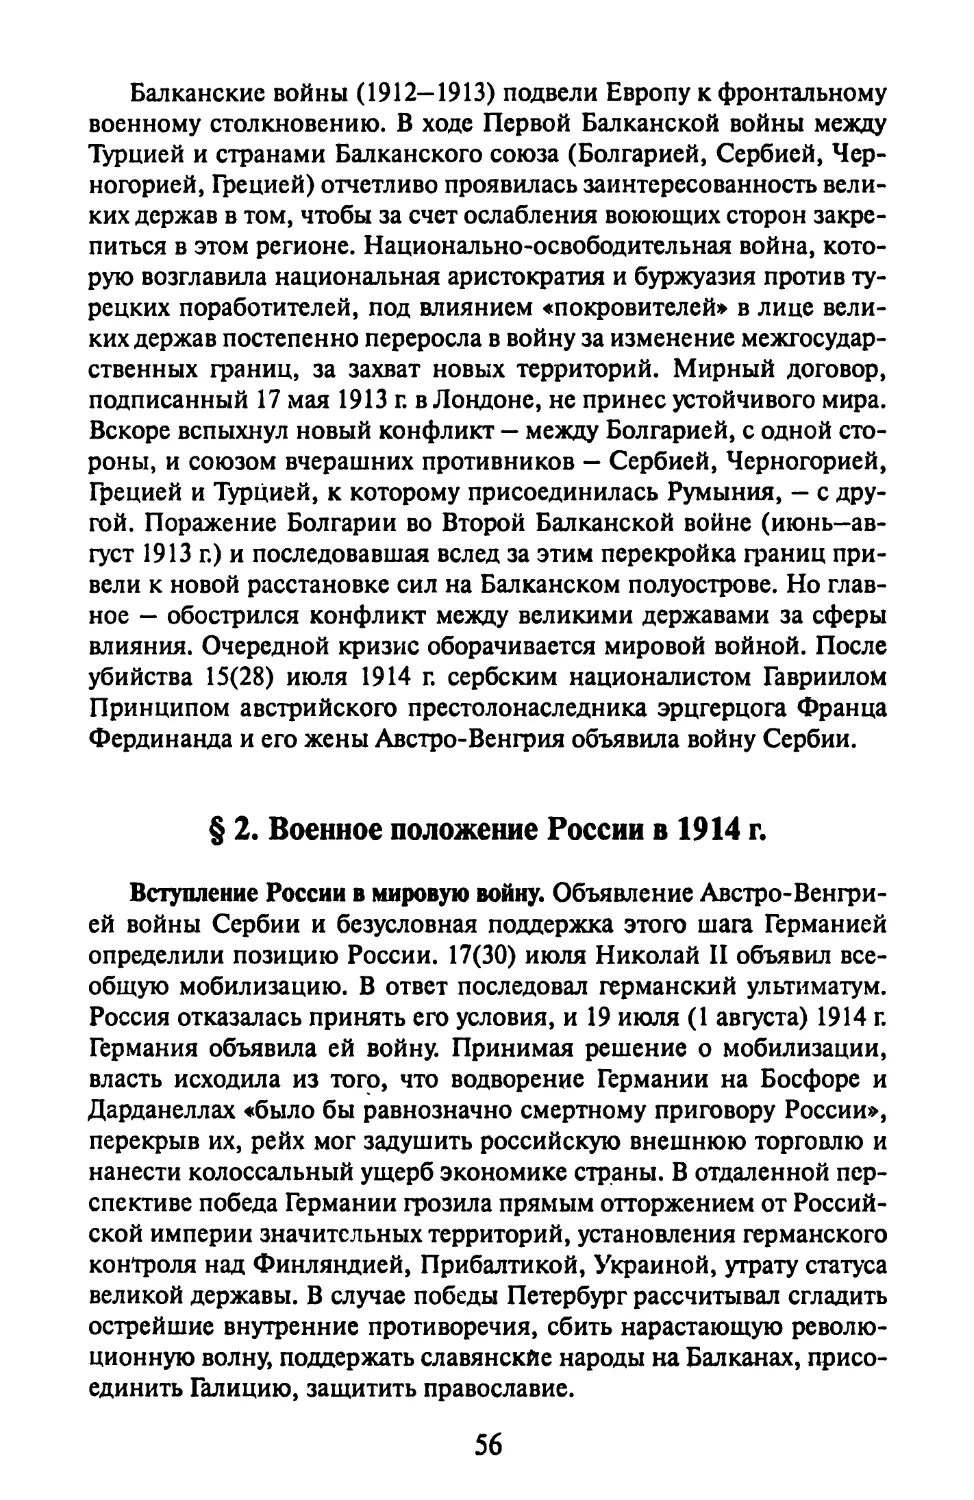 § 2. Военное положение России в 1914 г.